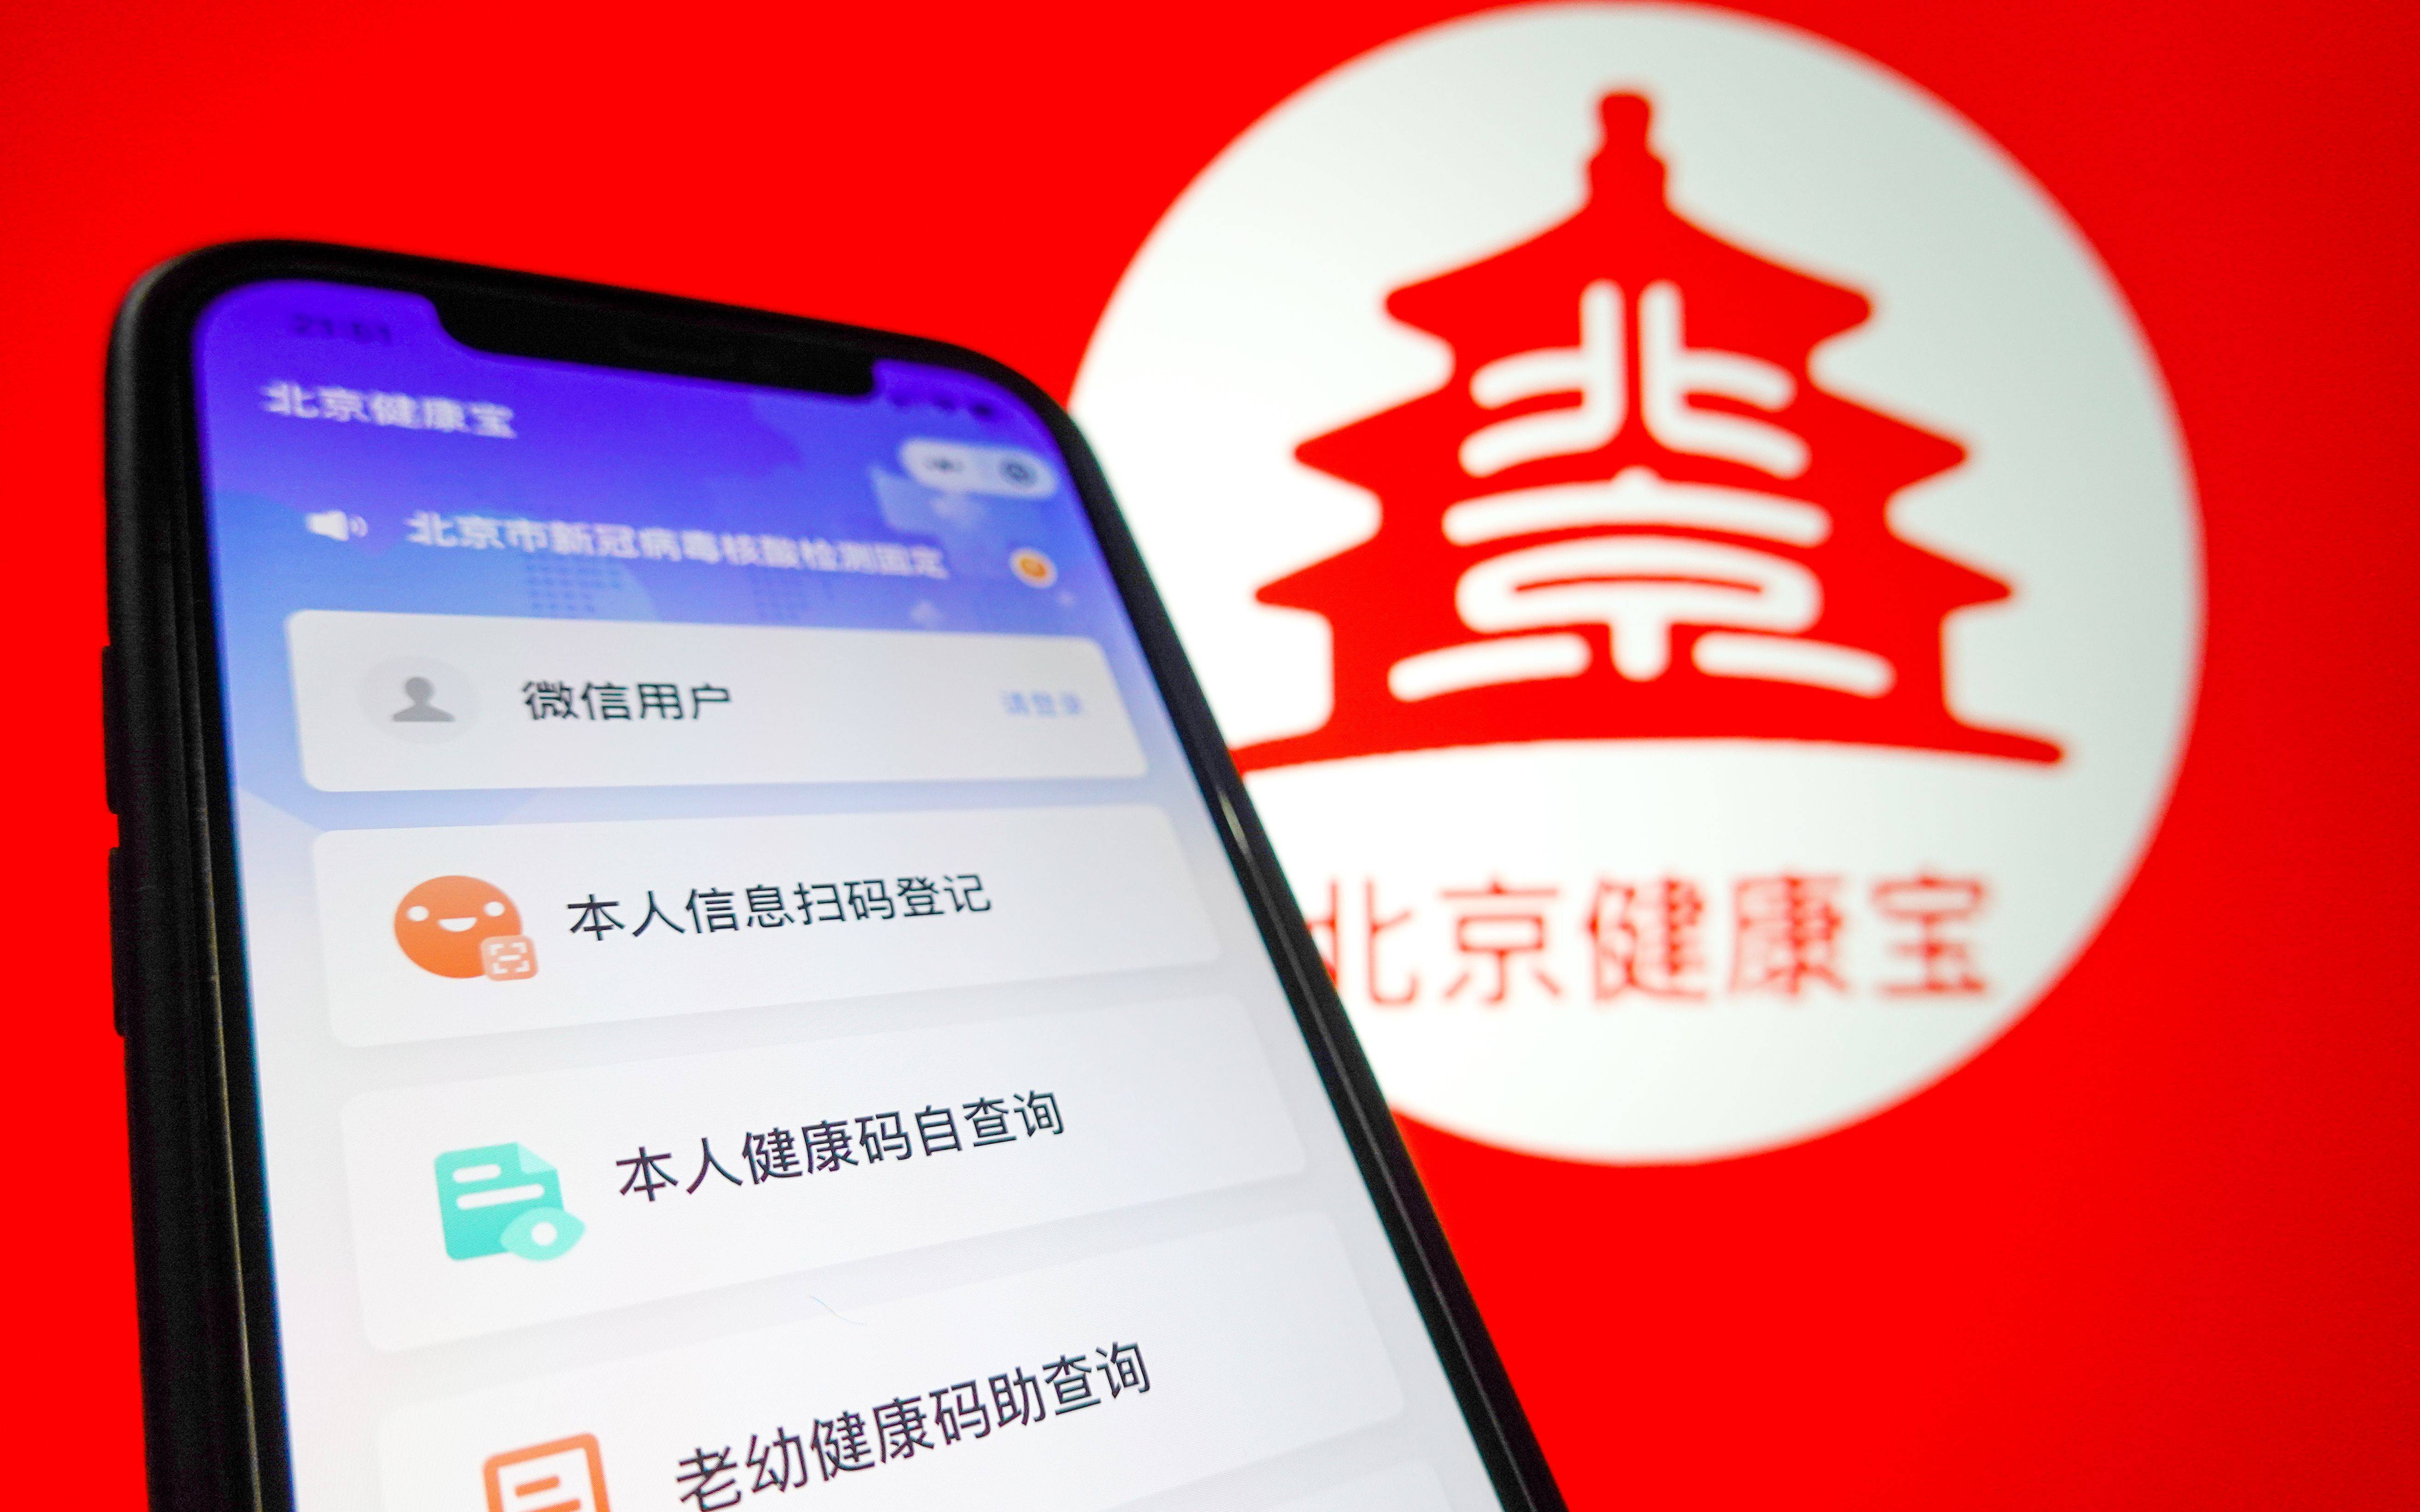 境外网络攻击北京健康宝，其心可诛 | 新京报快评